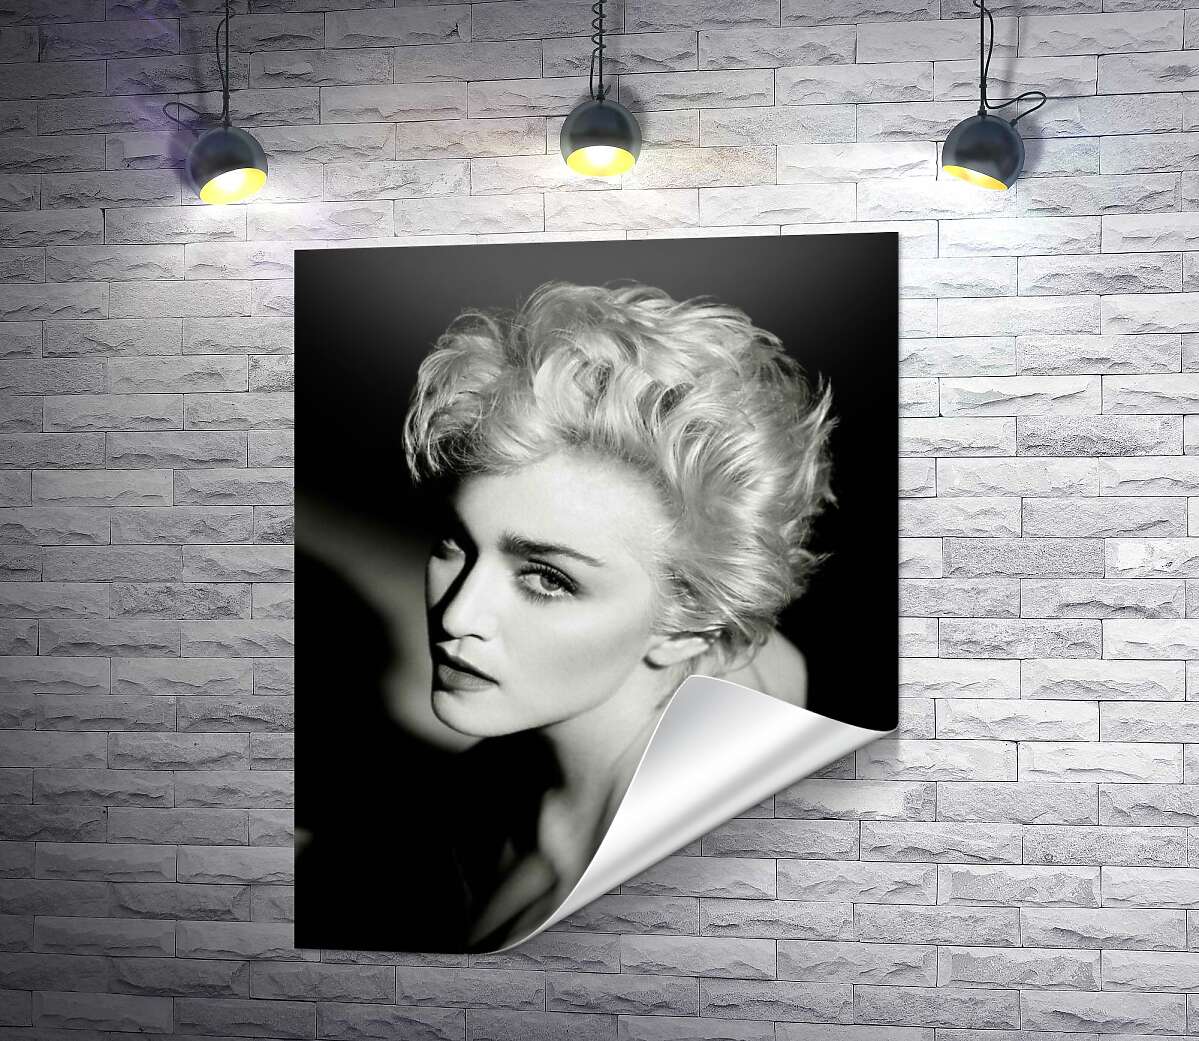 друк Чарівна Мадонна на чорно-білій фотографії